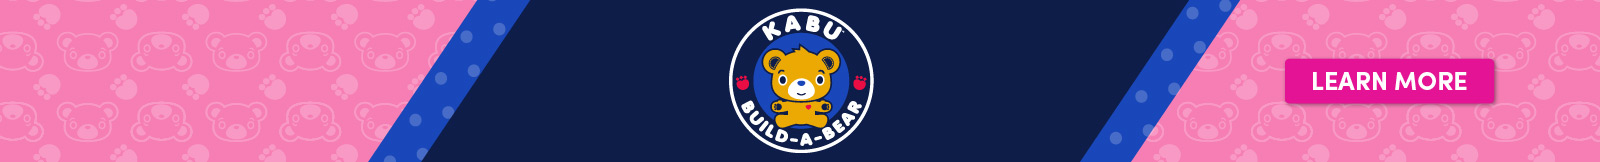 Kabu Plush Banner